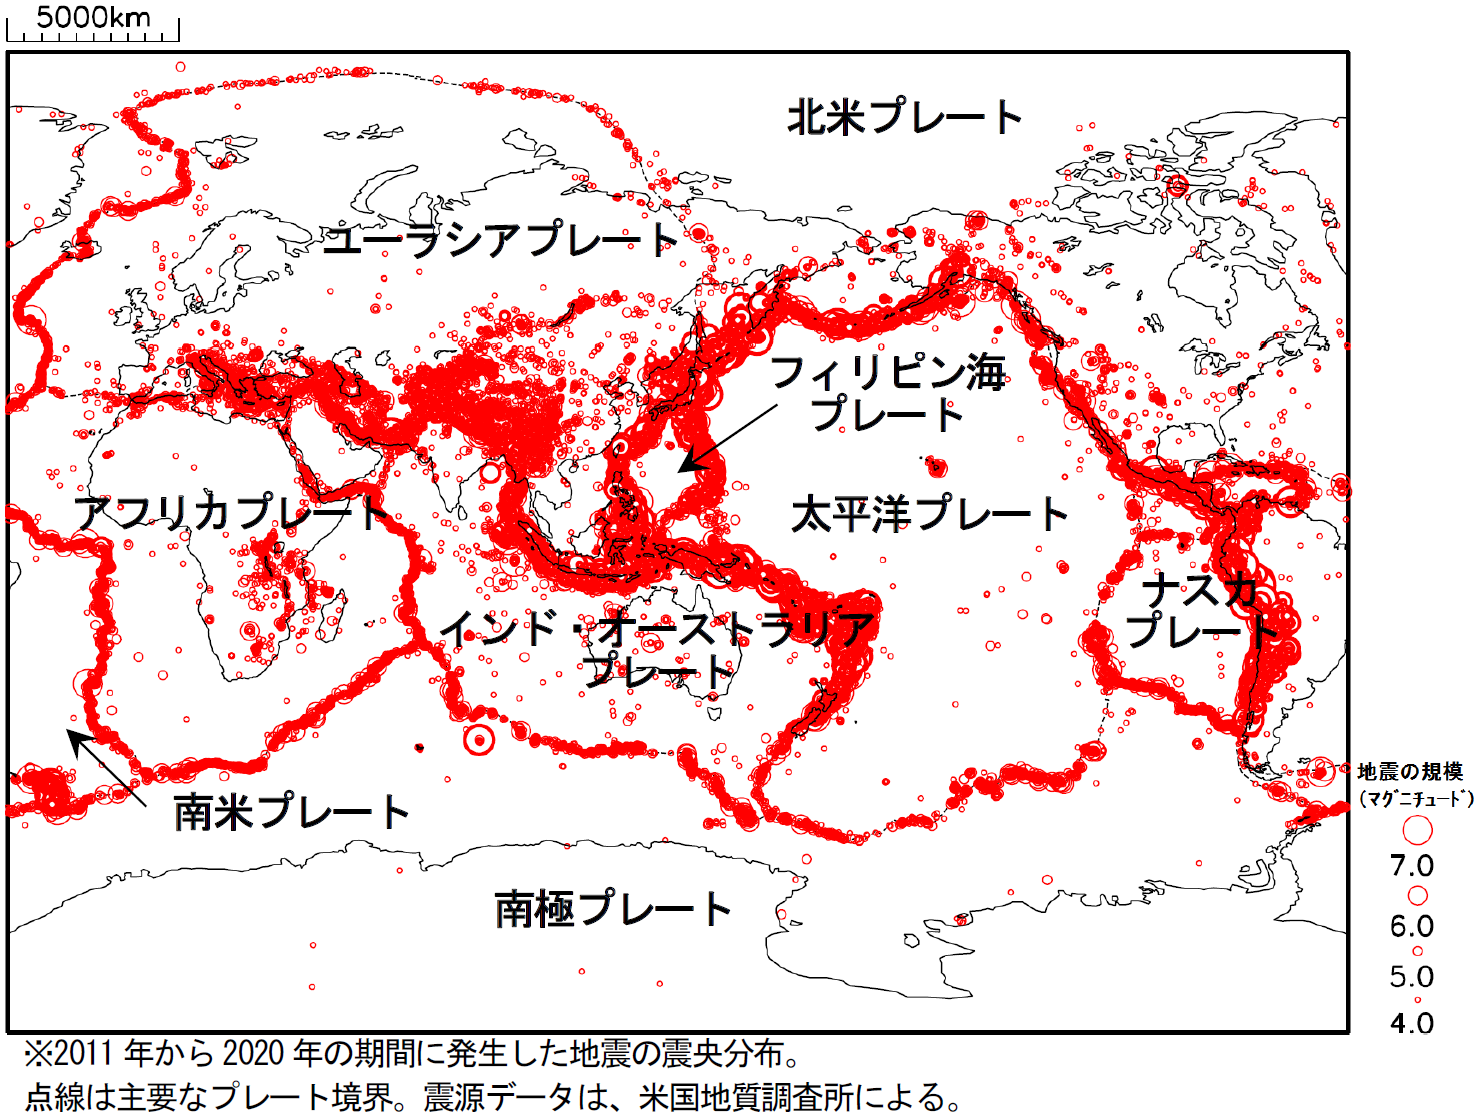 世界の主なプレートと地震分布